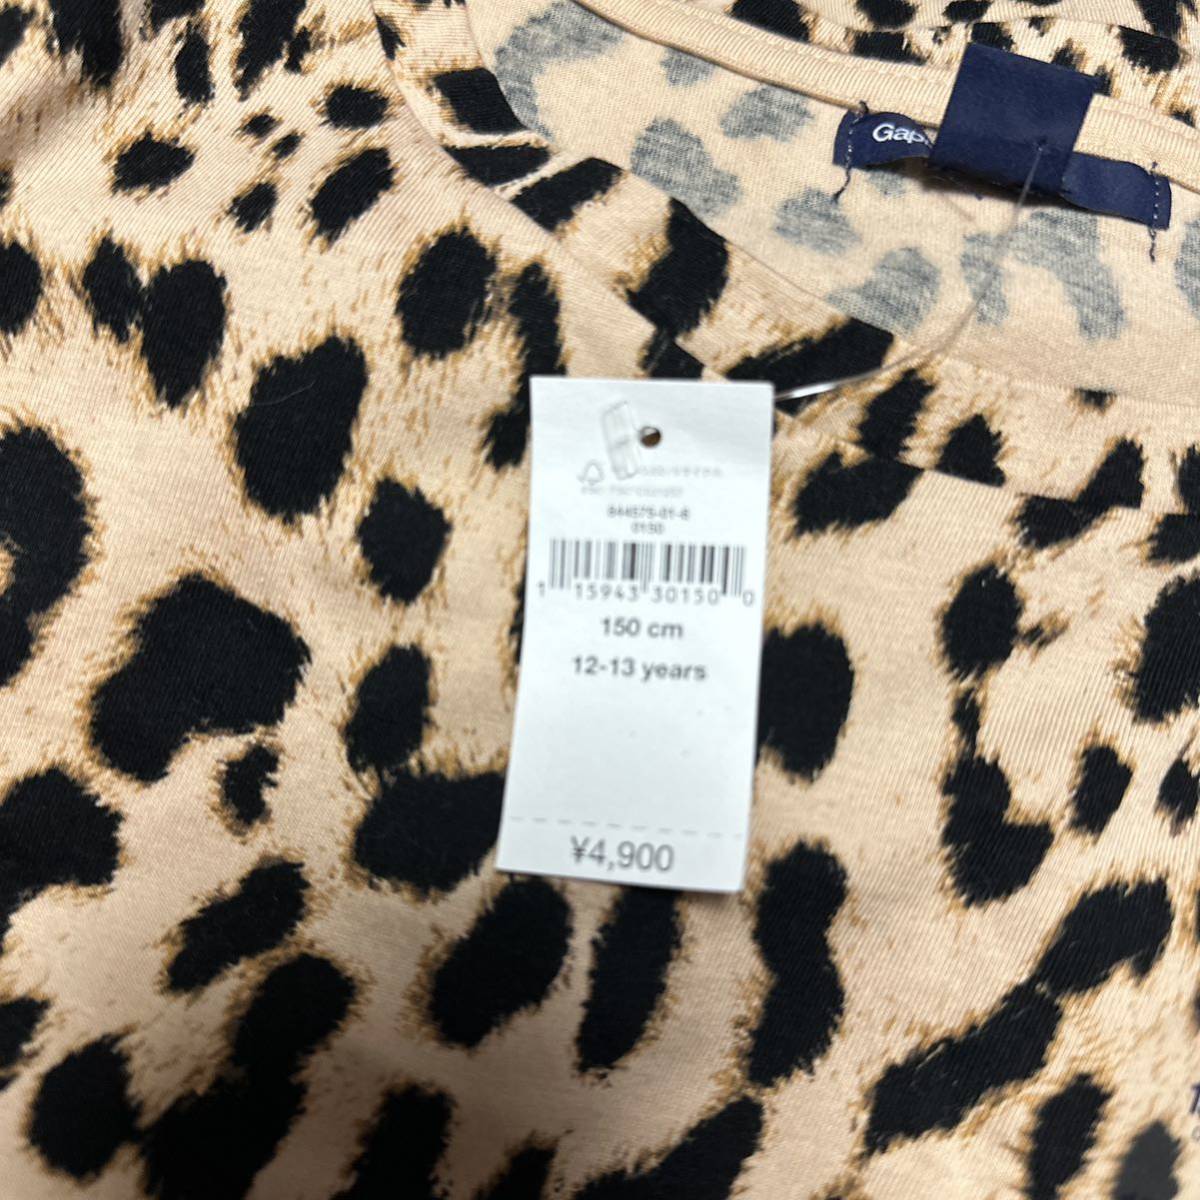  новый товар GAPkids леопардовая расцветка One-piece 150 обычная цена 4900 иен his Mini Chubbygang banachiZARA H&M симпатичный взрослый серия прохладный девочка ребенок одежда 